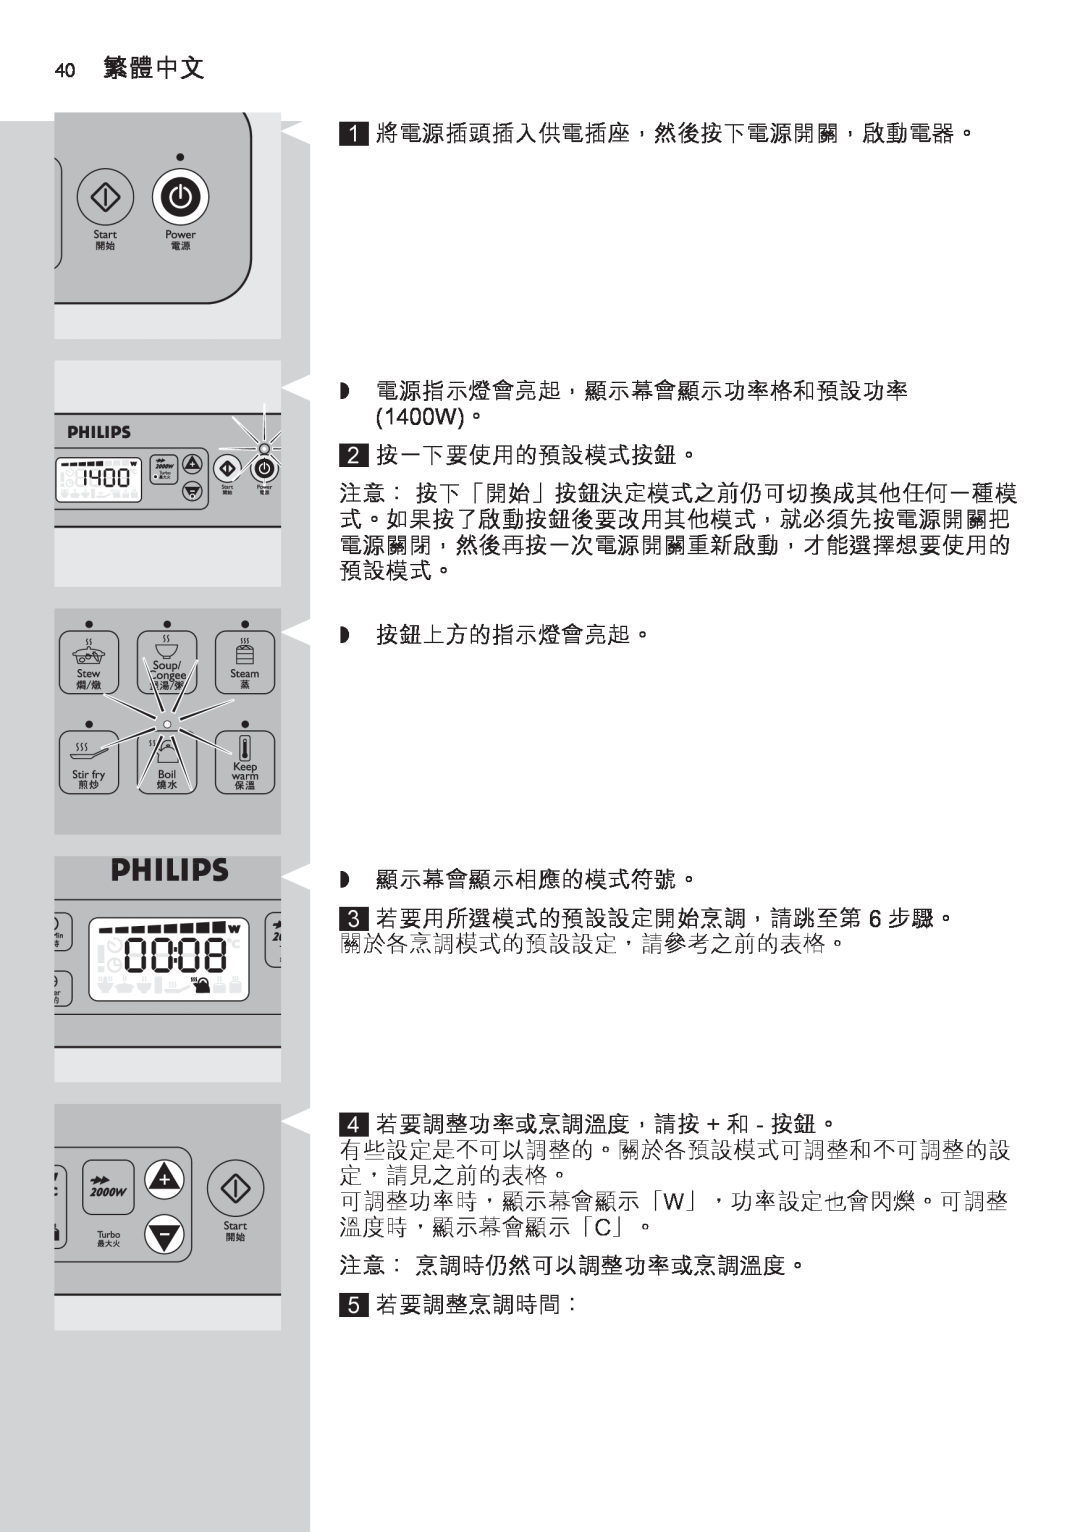 Philips HD4918 40 繁體中文, 1400W。, 有些設定是不可以調整的。關於各預設模式可調整和不可調整的設 定，請見之前的表格。, 可調整功率時，顯示幕會顯示「W」，功率設定也會閃爍。可調整 溫度時，顯示幕會顯示「C」。 